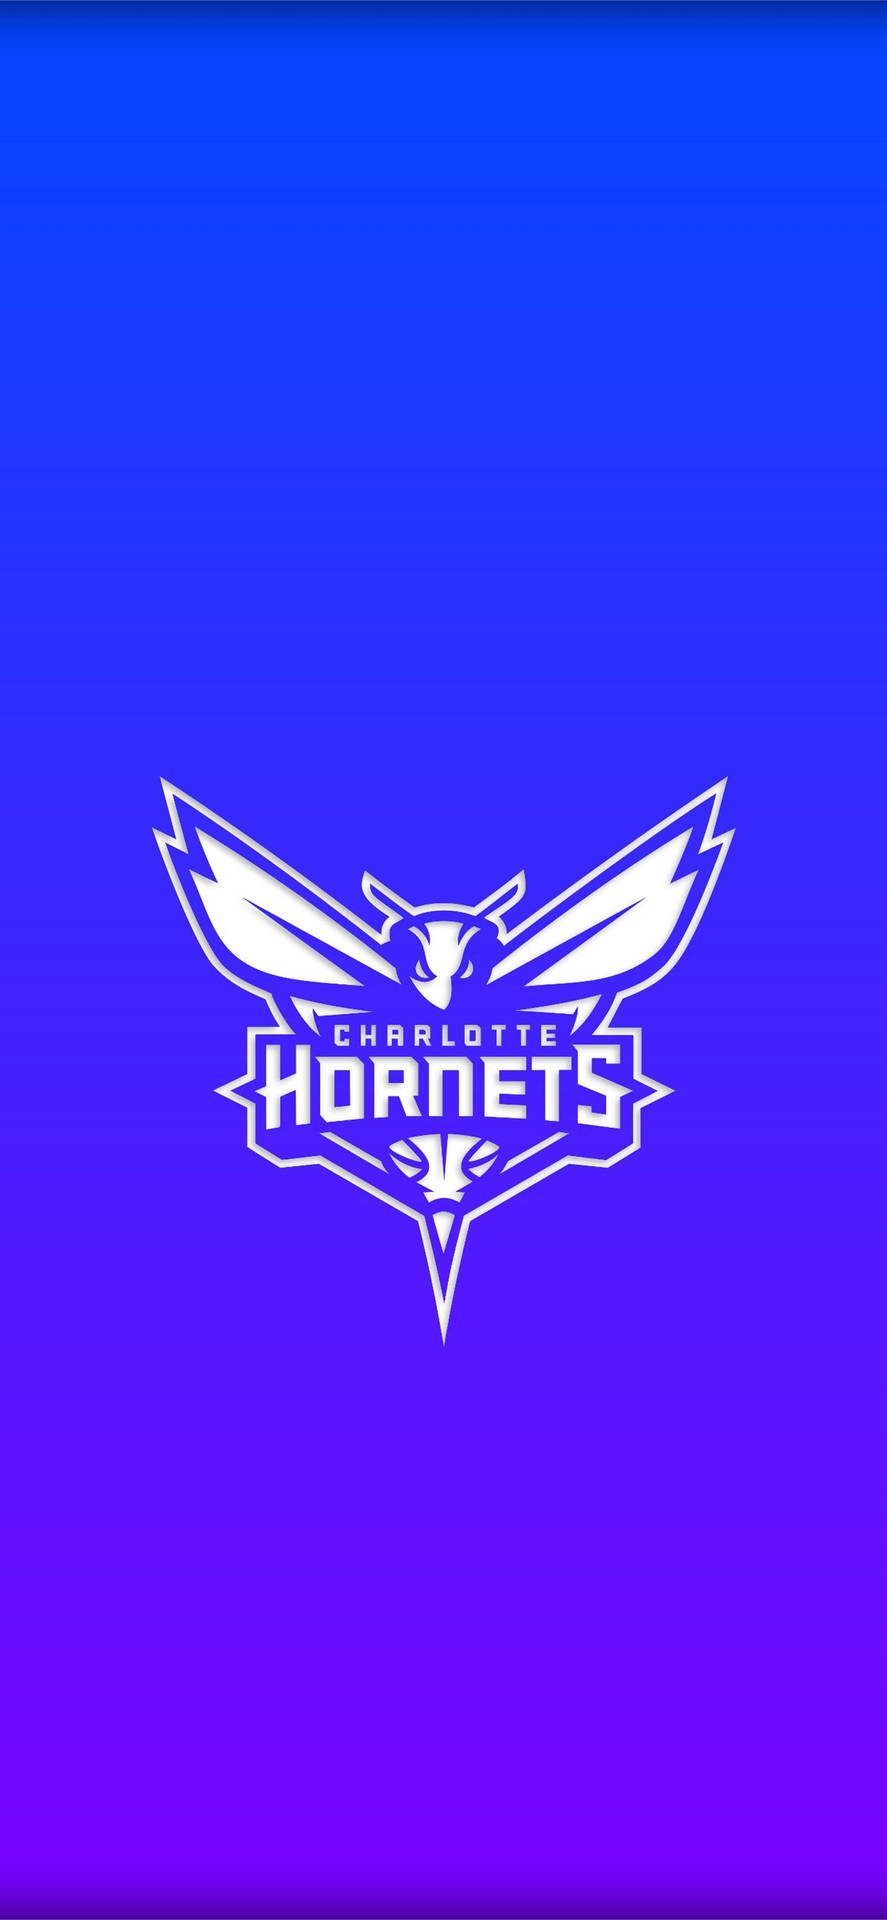 Hornets Wallpaper